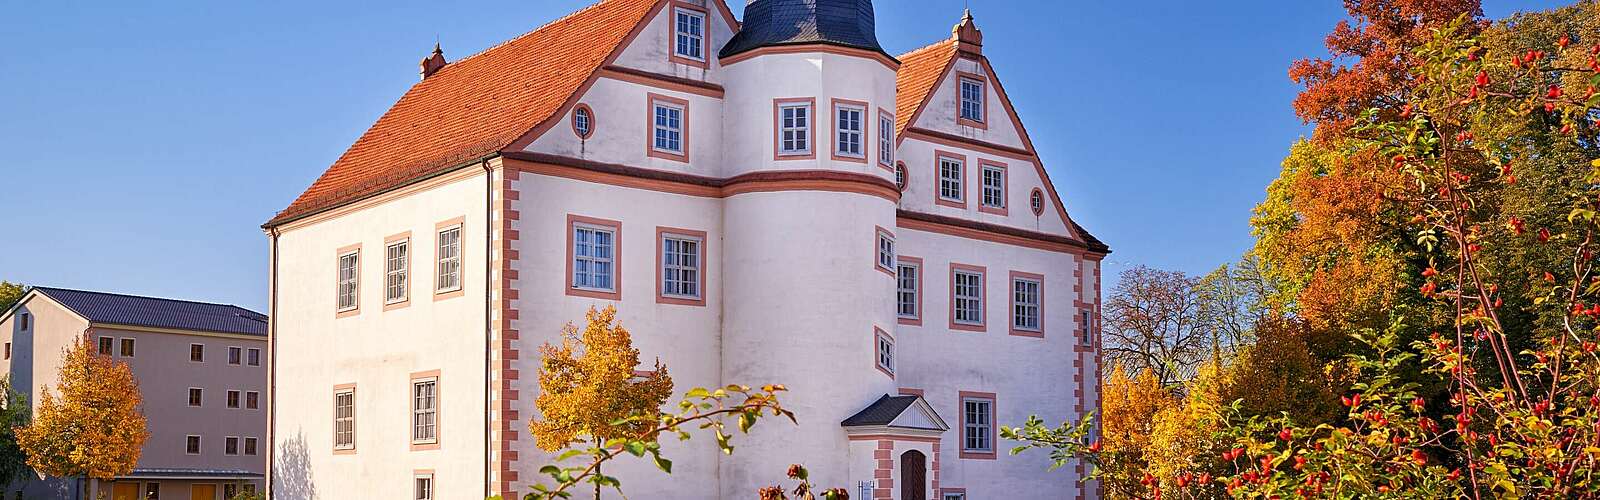 Schloss Königs Wusterhausen,
        
    

        Foto: TMB-Fotoarchiv/Frank Liebke